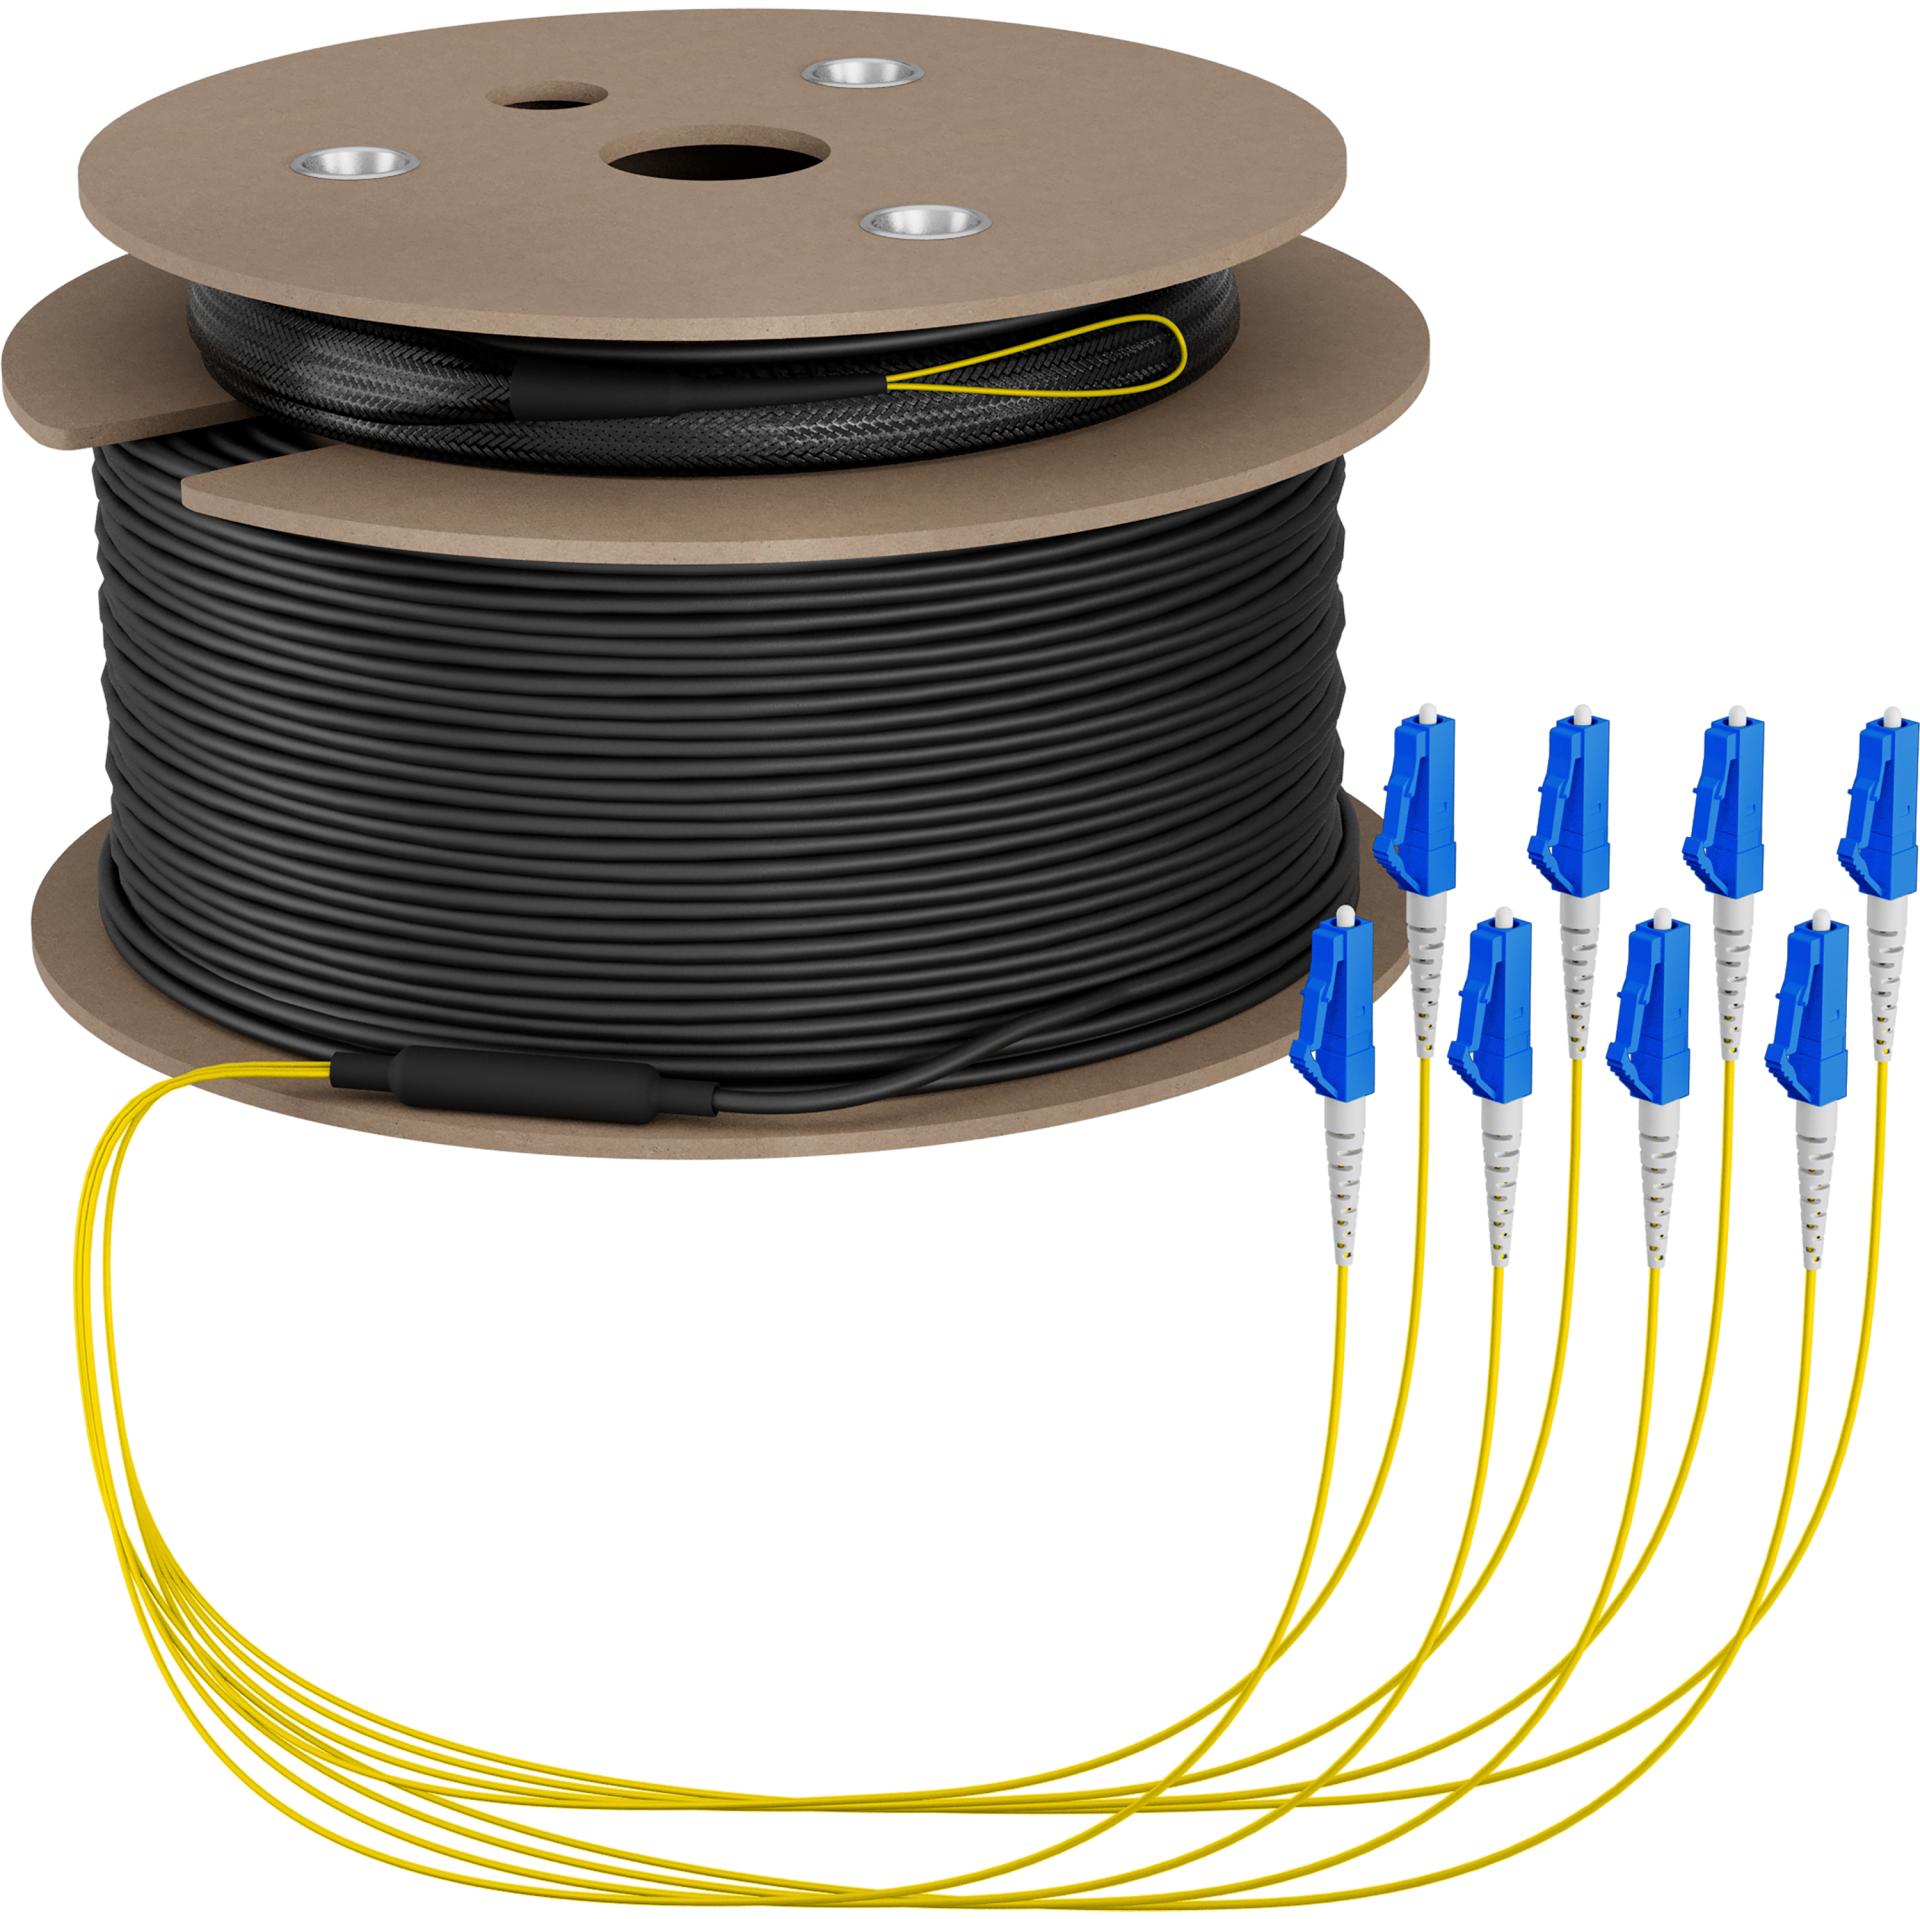 Trunk cable U-DQ(ZN)BH OS2 8E (1x8) LC-LC,70m Dca LSZH